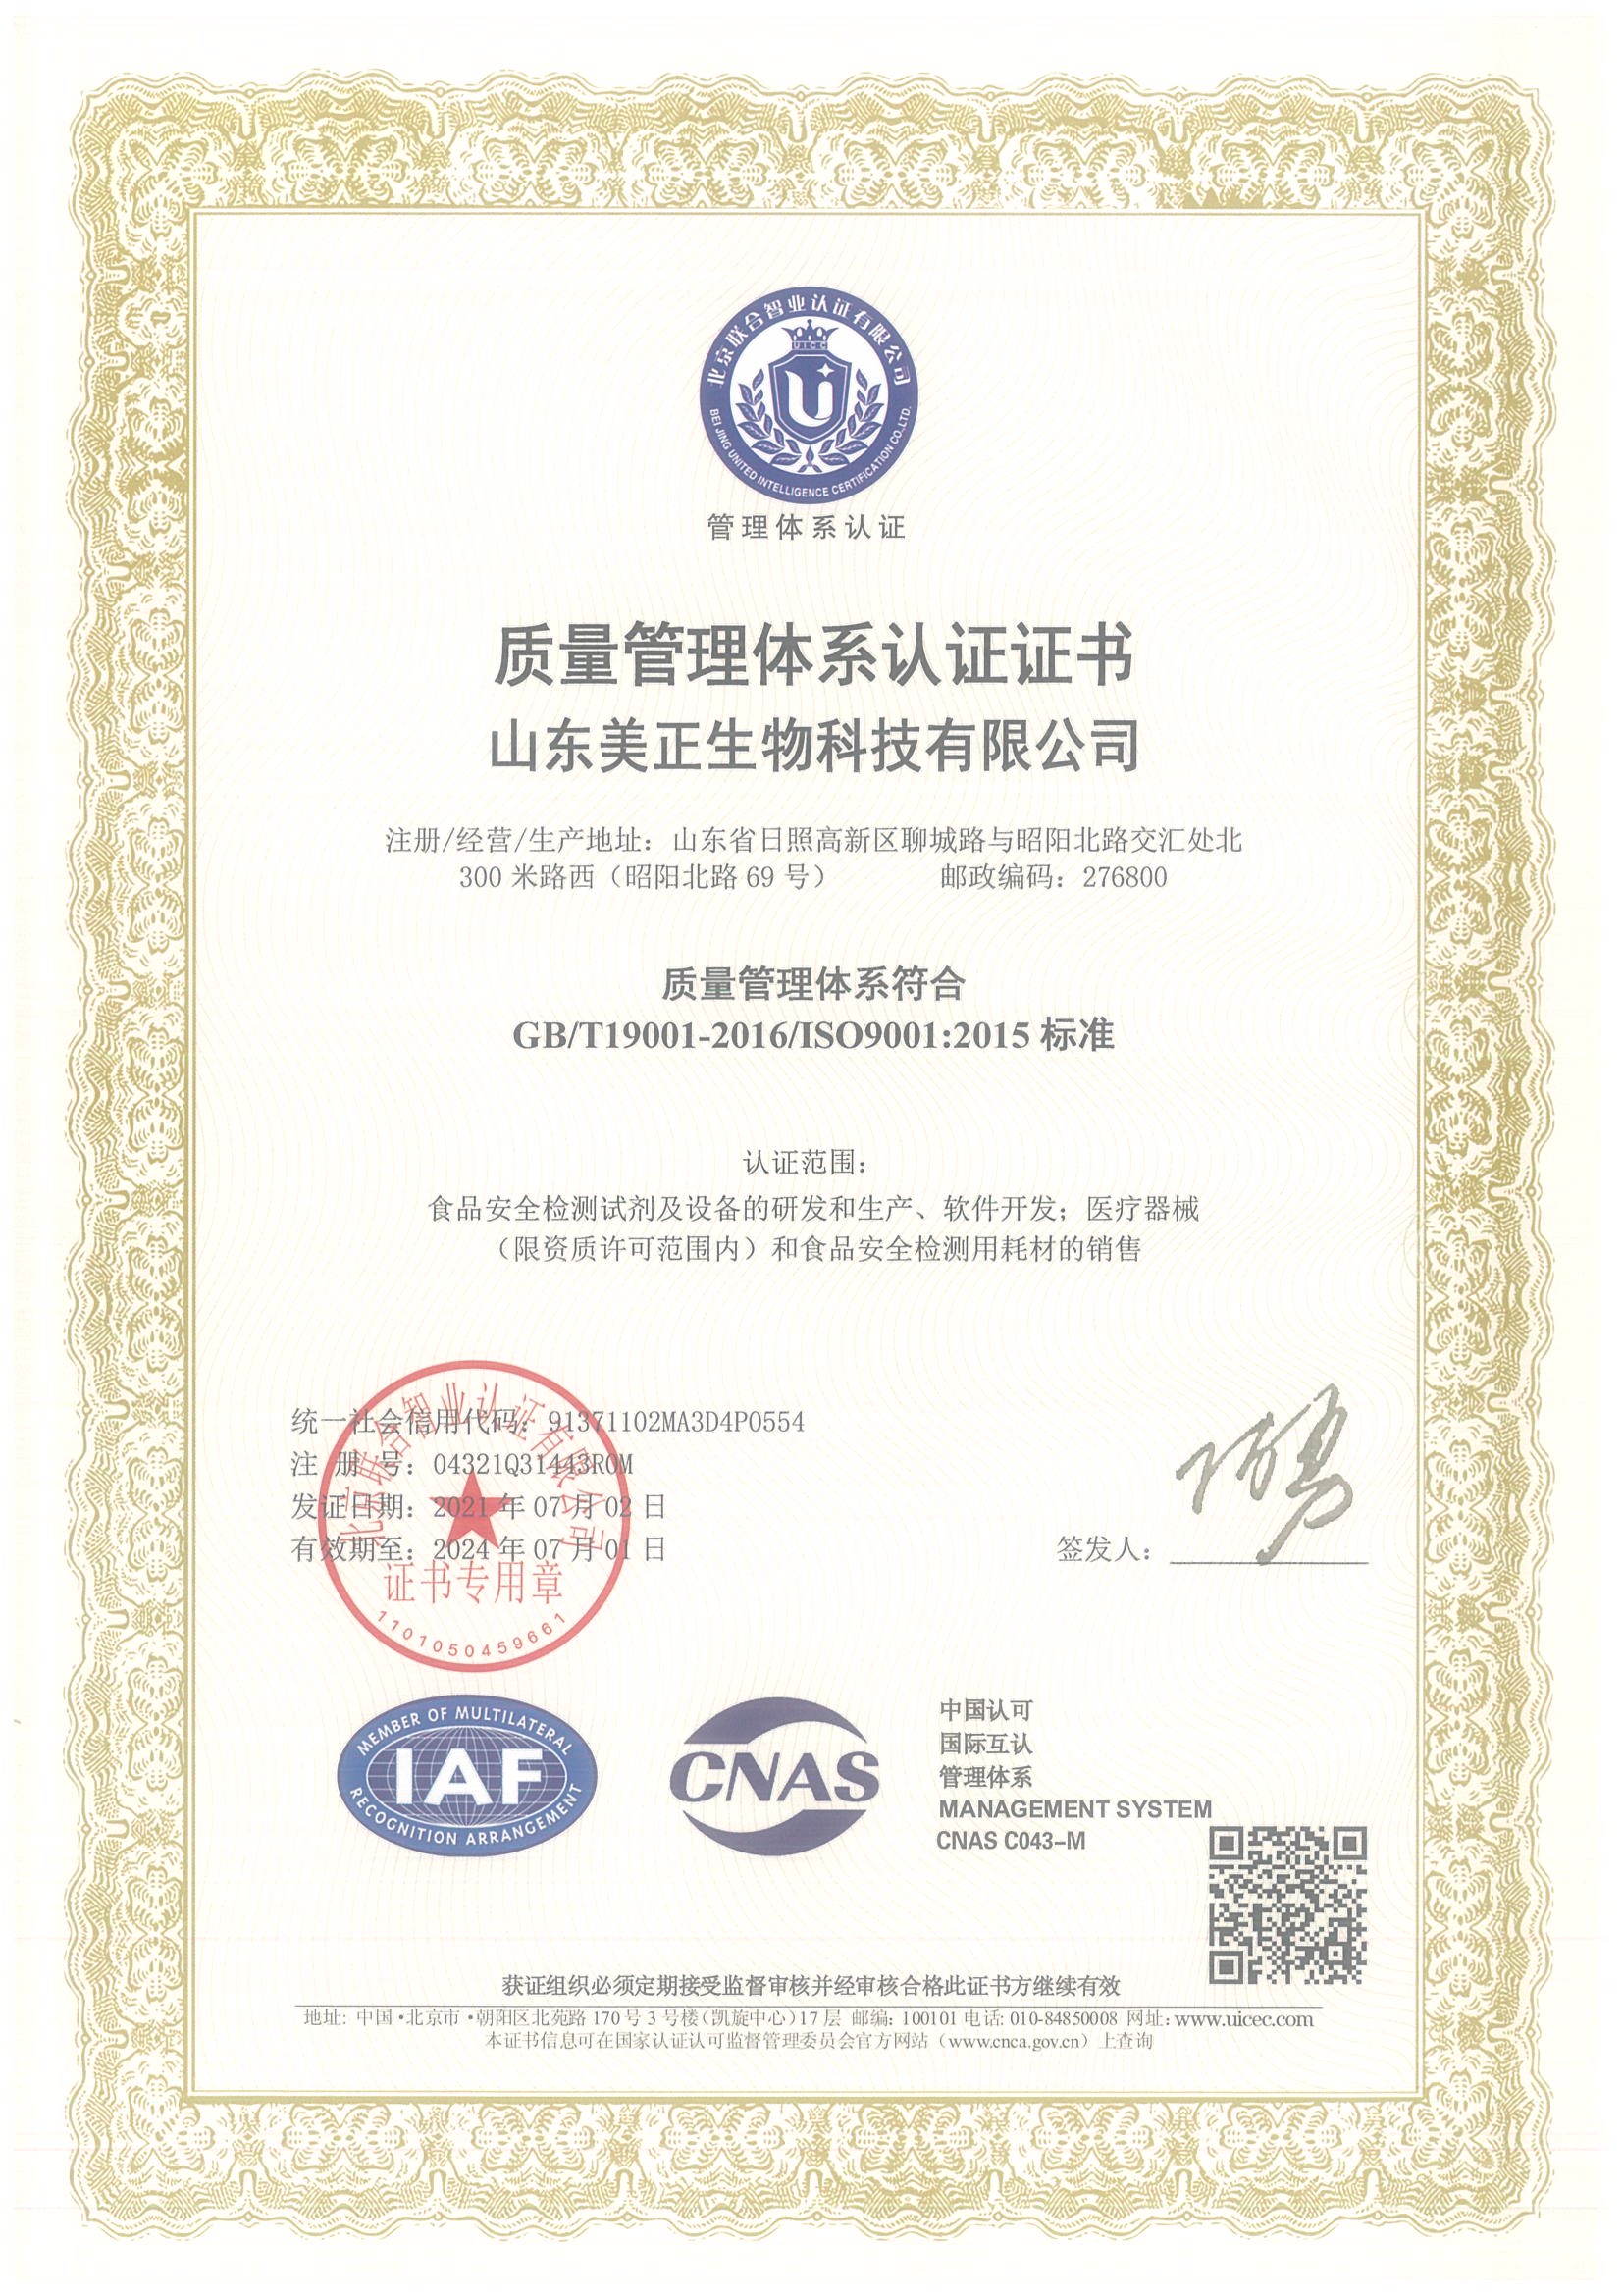 山东美正-质量管理体系认证证书